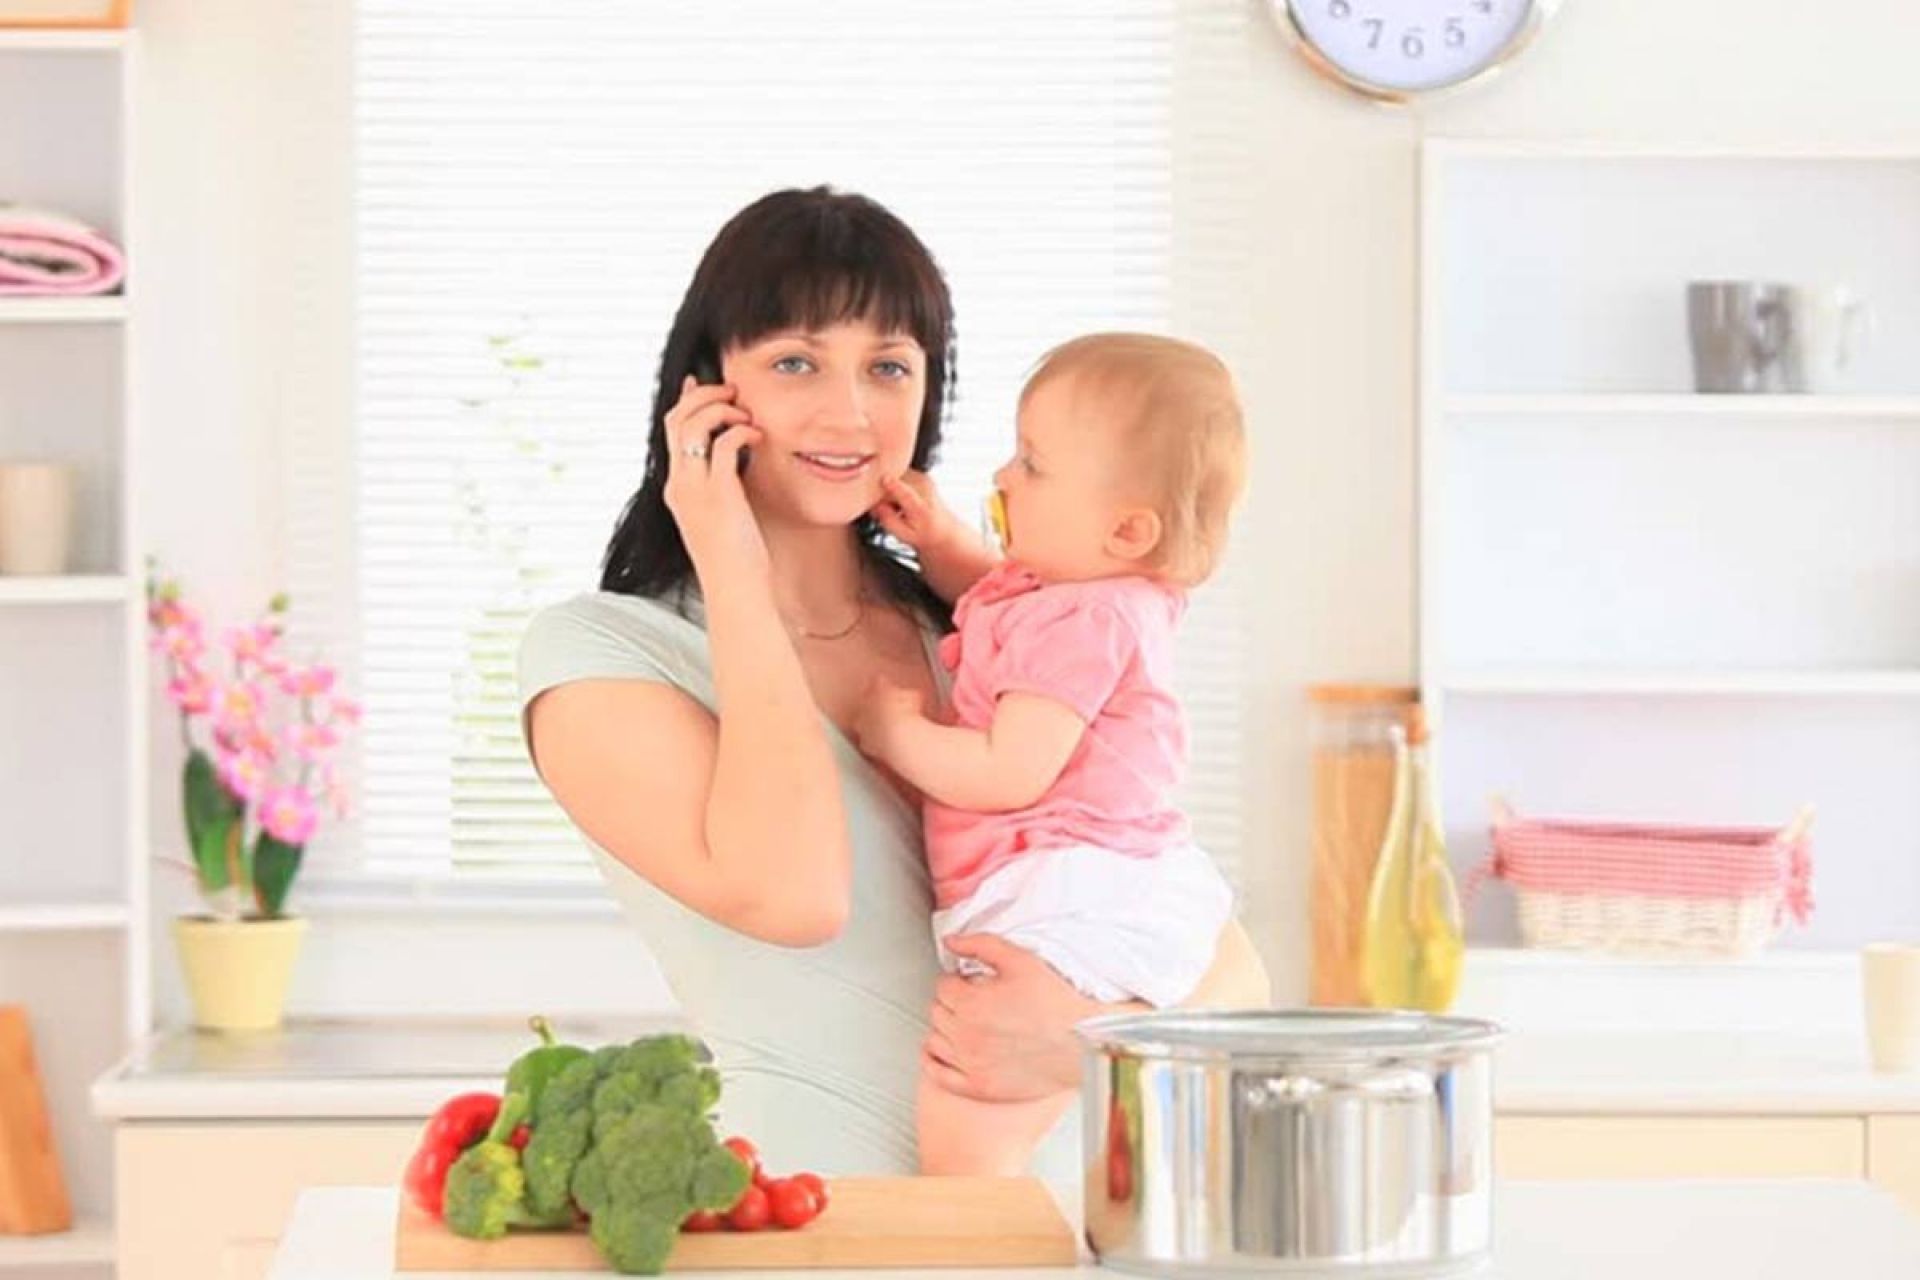 Madre multitarea: cocina, habla por teléfono mientras atiende a bebé